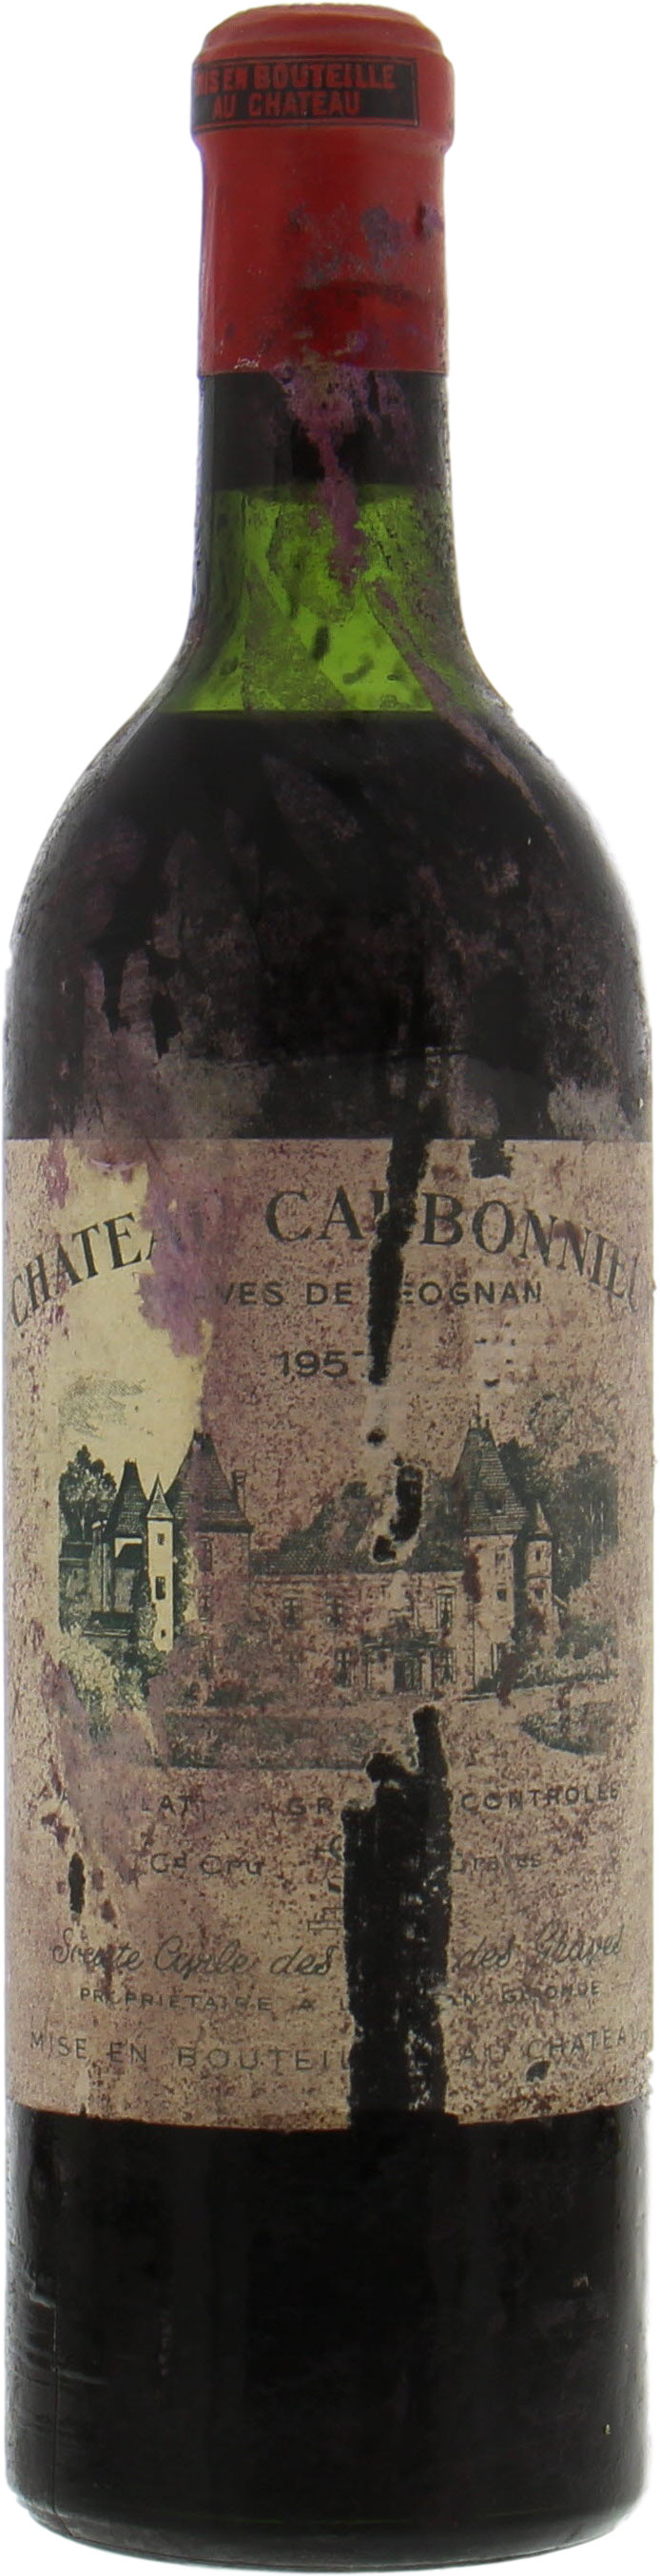 Chateau Carbonnieux - Chateau Carbonnieux 1957 Top Shoulder